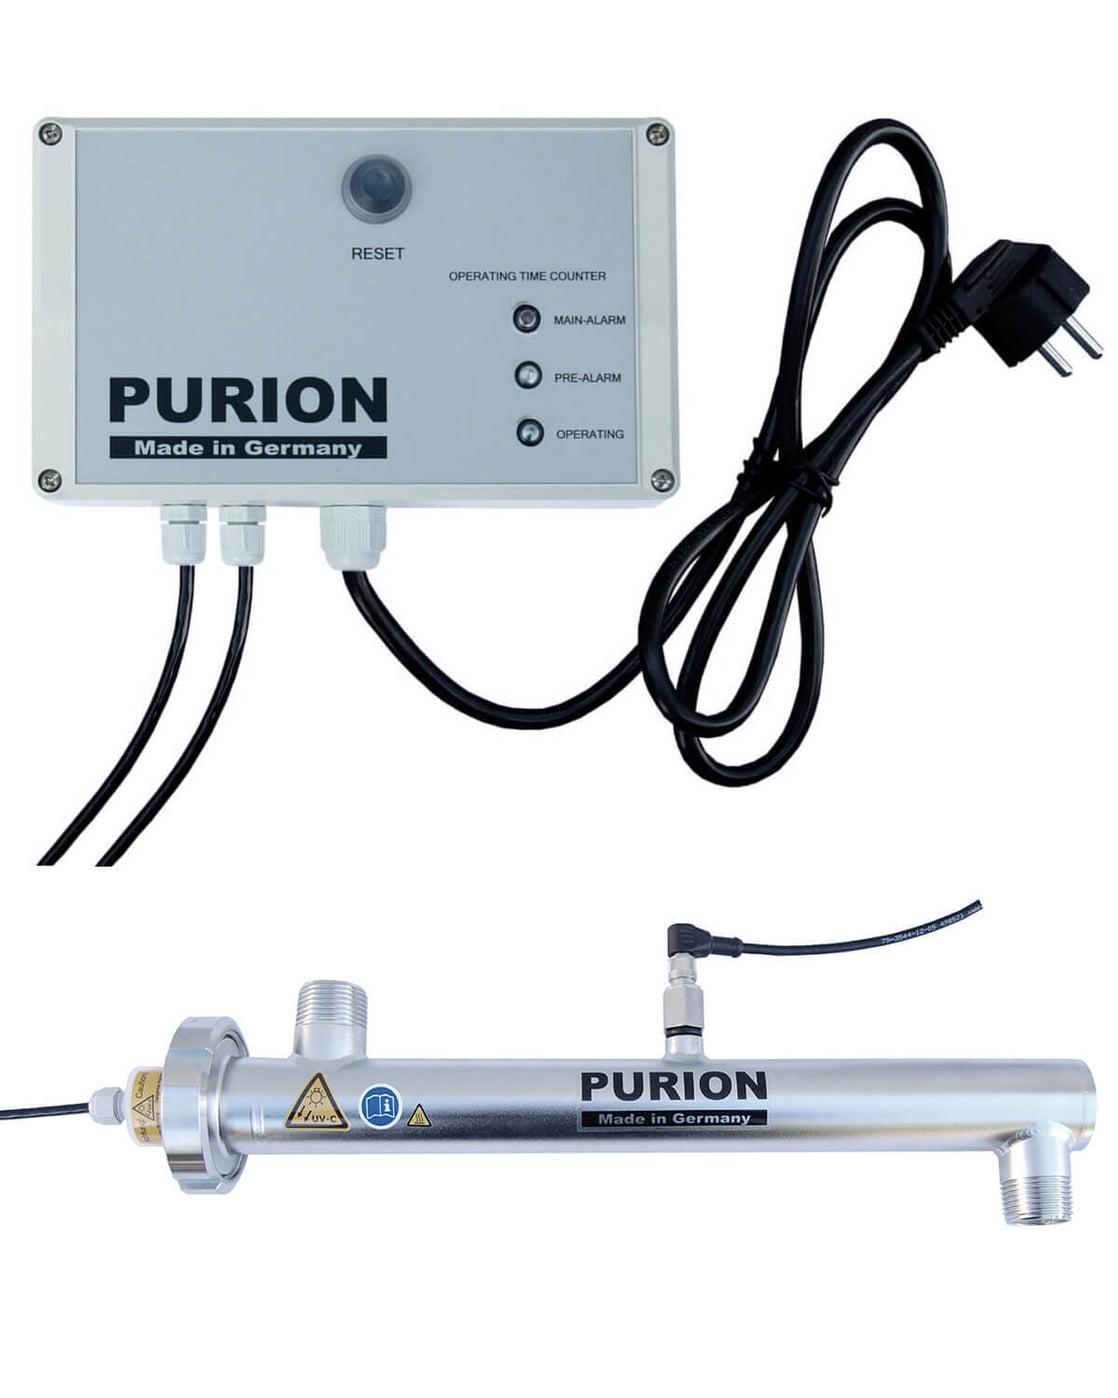 Das Produkt der PURION GmbH, der PURION 1000 110 - 240 V AC OPD, reinigt Trinkwasser.